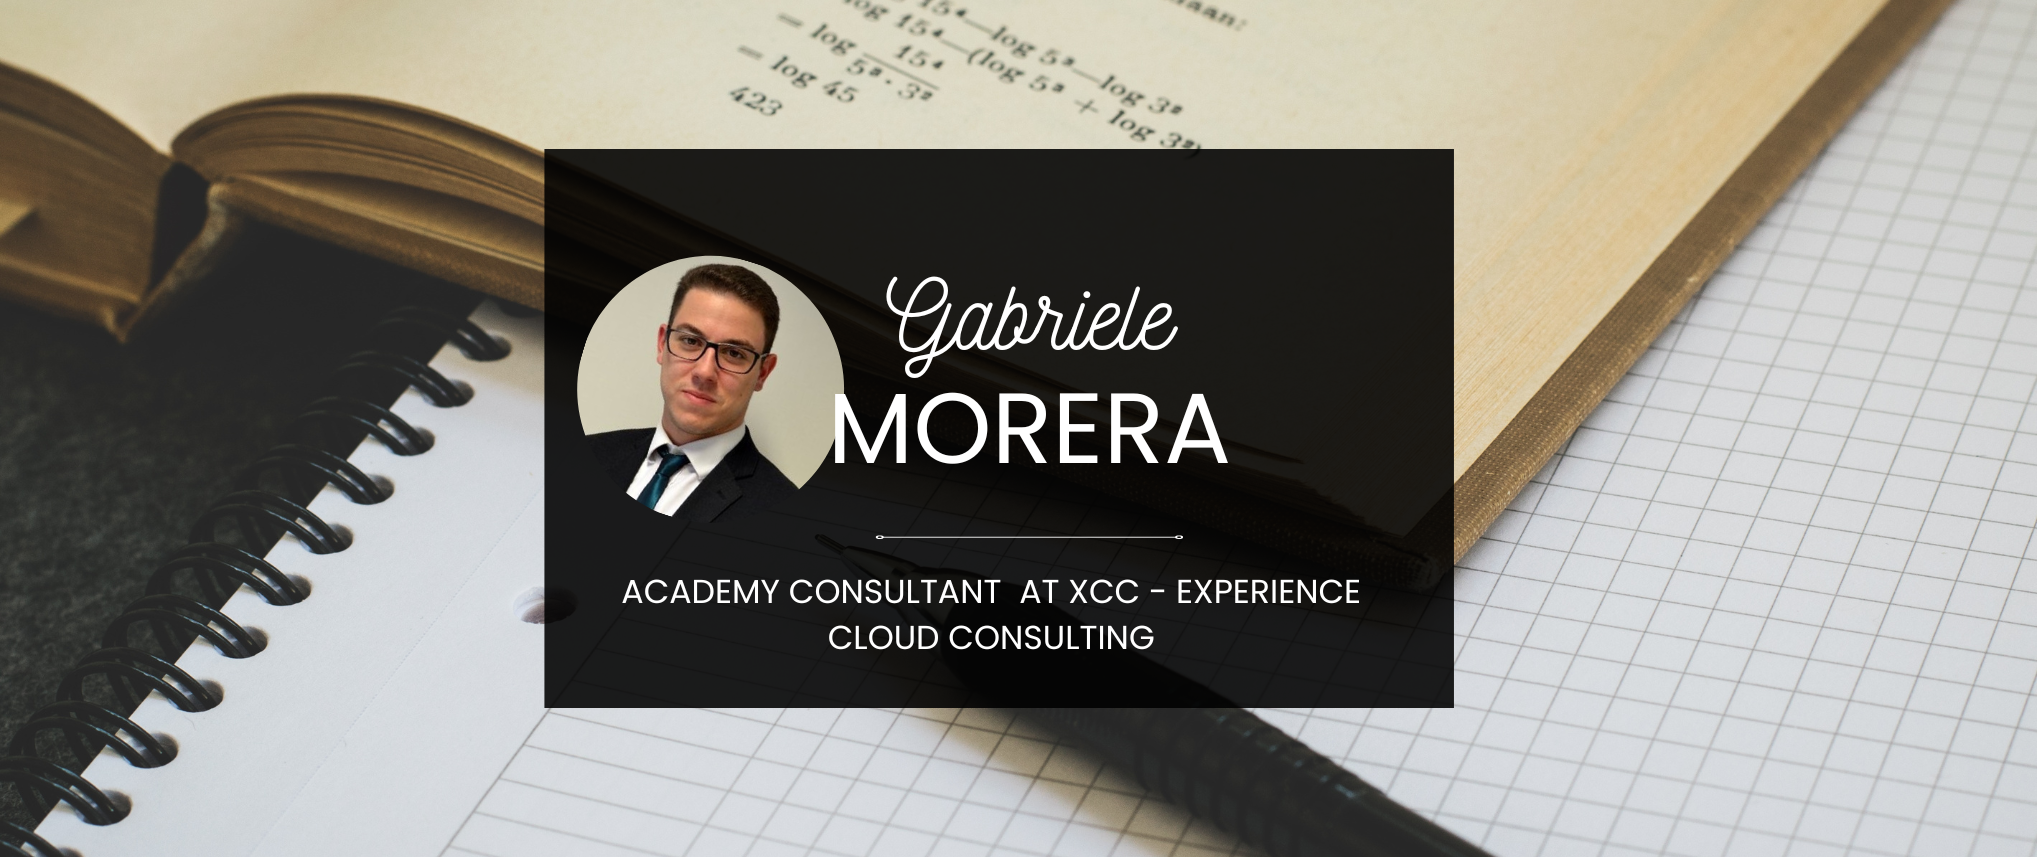 Rubrica XCC, il successo parte dai Consultant: Gabriele Morera